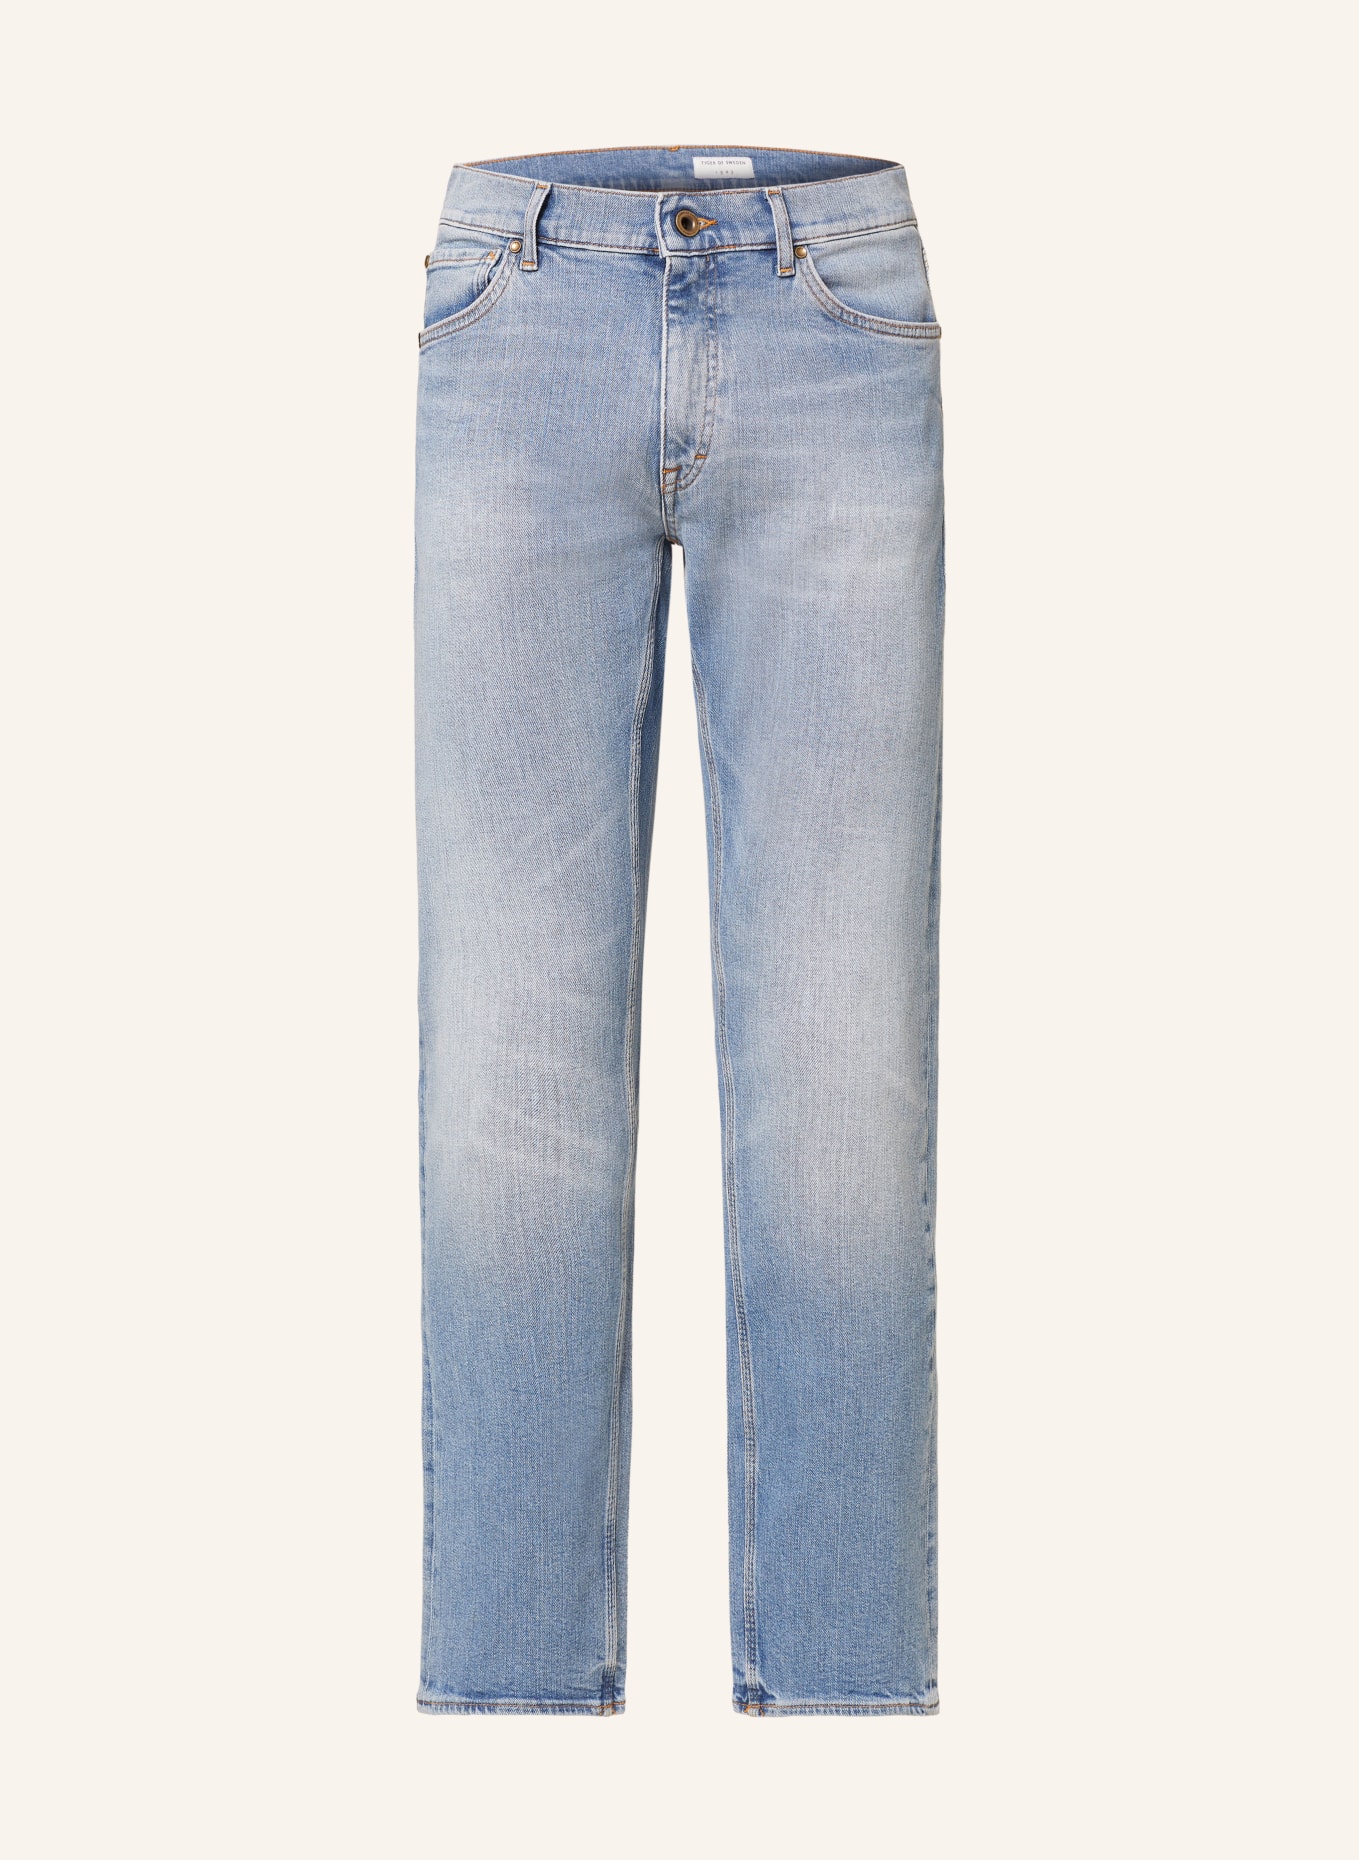 TIGER OF SWEDEN Jeans DES slim fit, Color: 200 Light blue (Image 1)